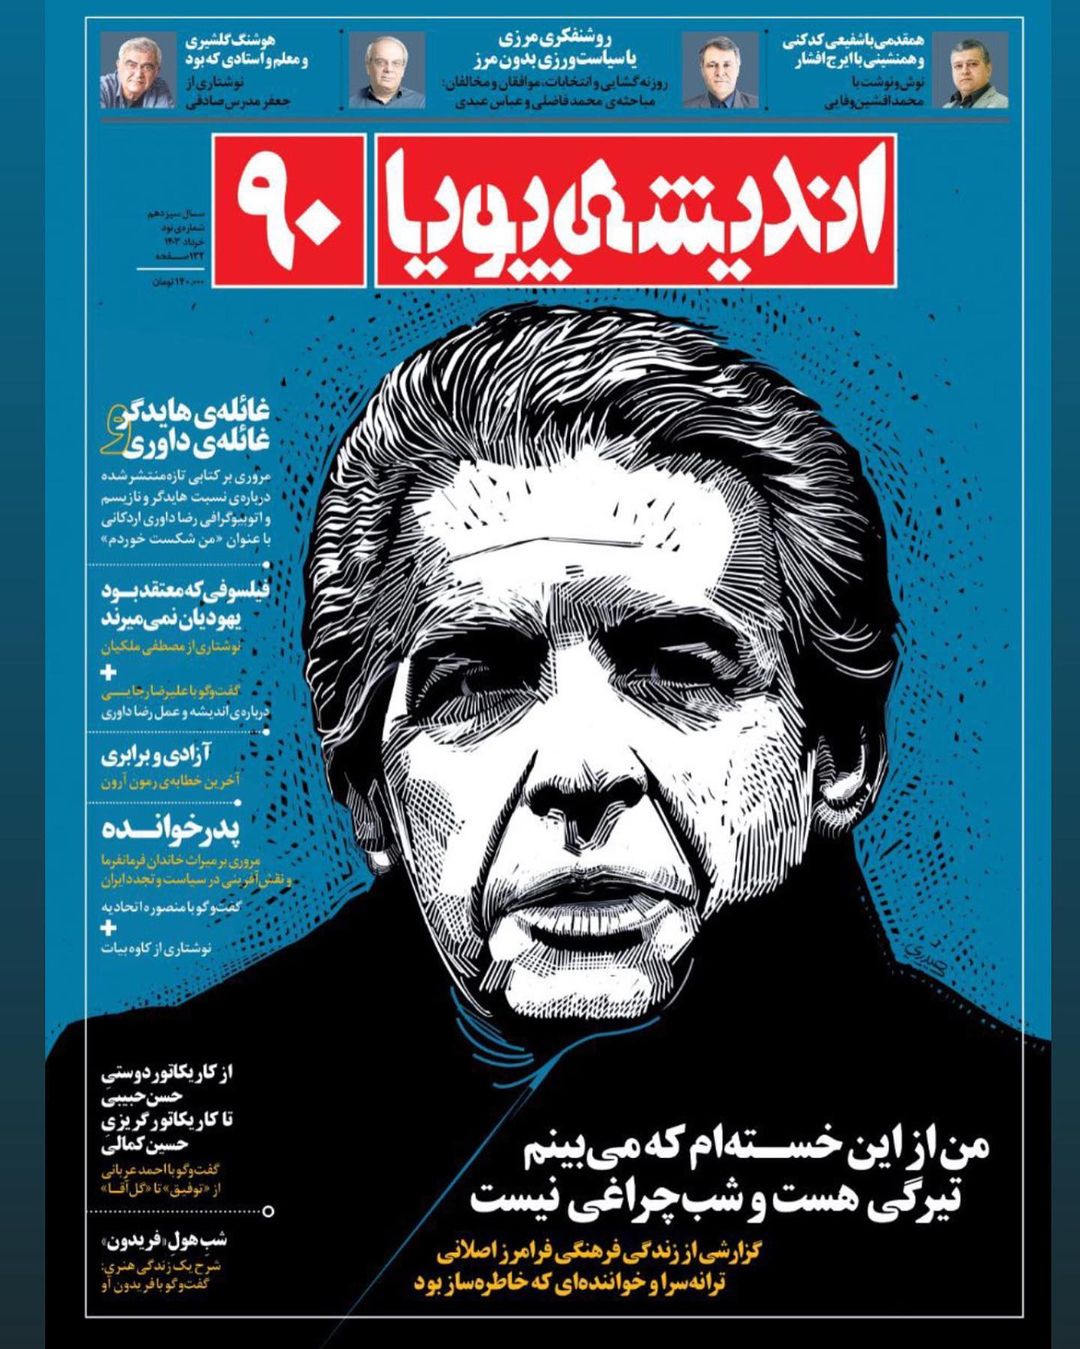 تصویر خواننده مطرح ایرانی روی جلد مجله معروف 